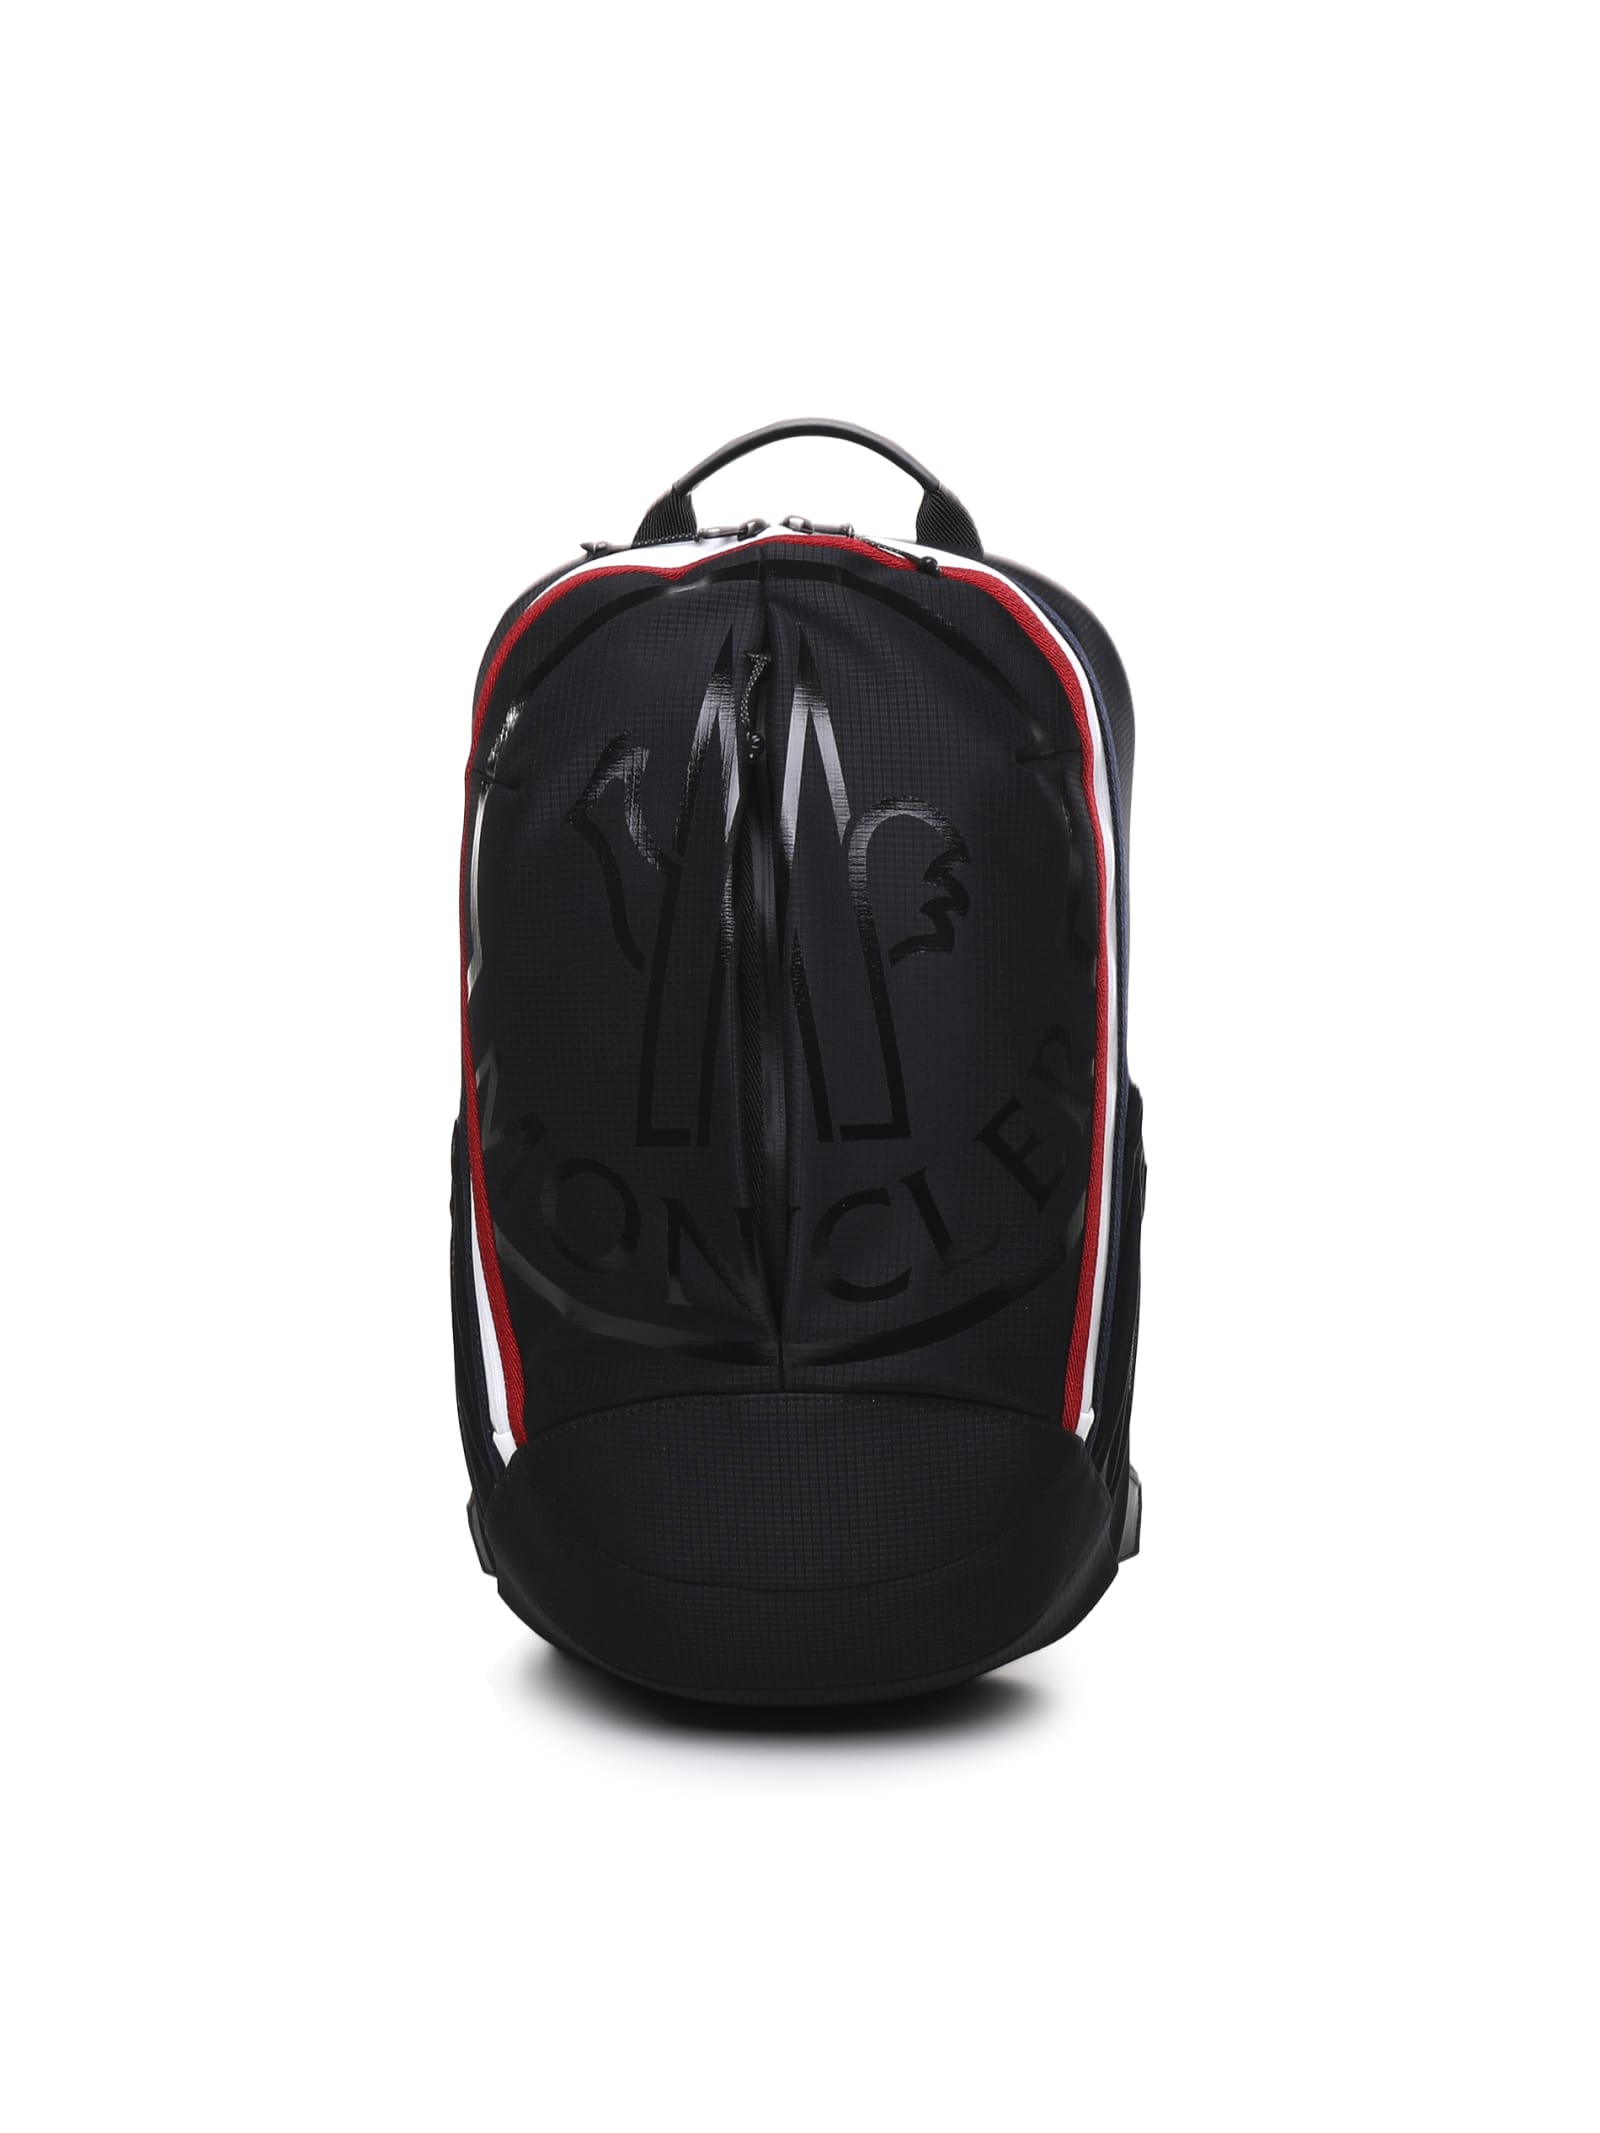 Moncler Cut Backpack In Black